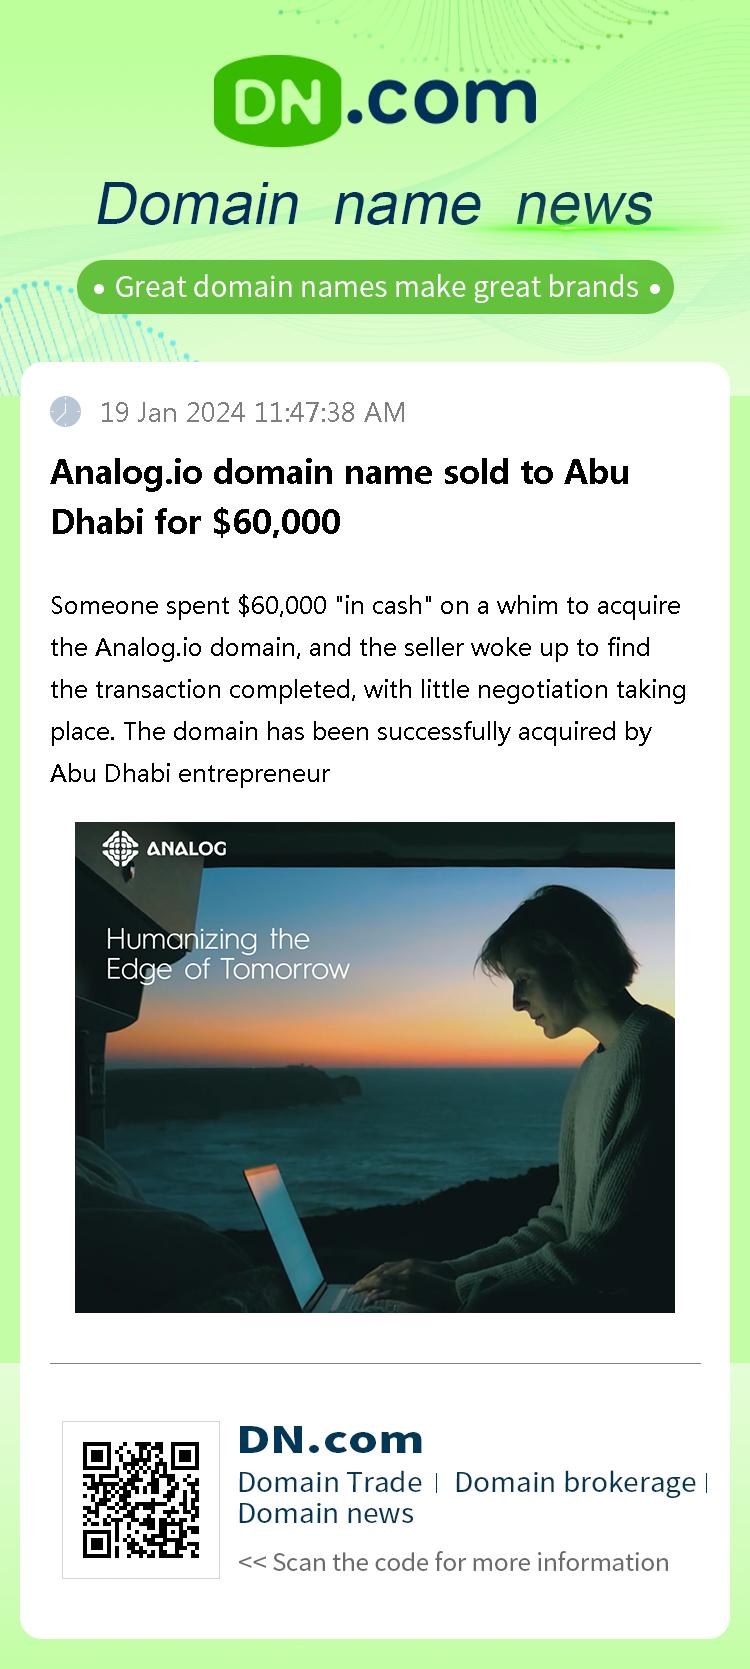 Analog.io domain name sold to Abu Dhabi for $60,000